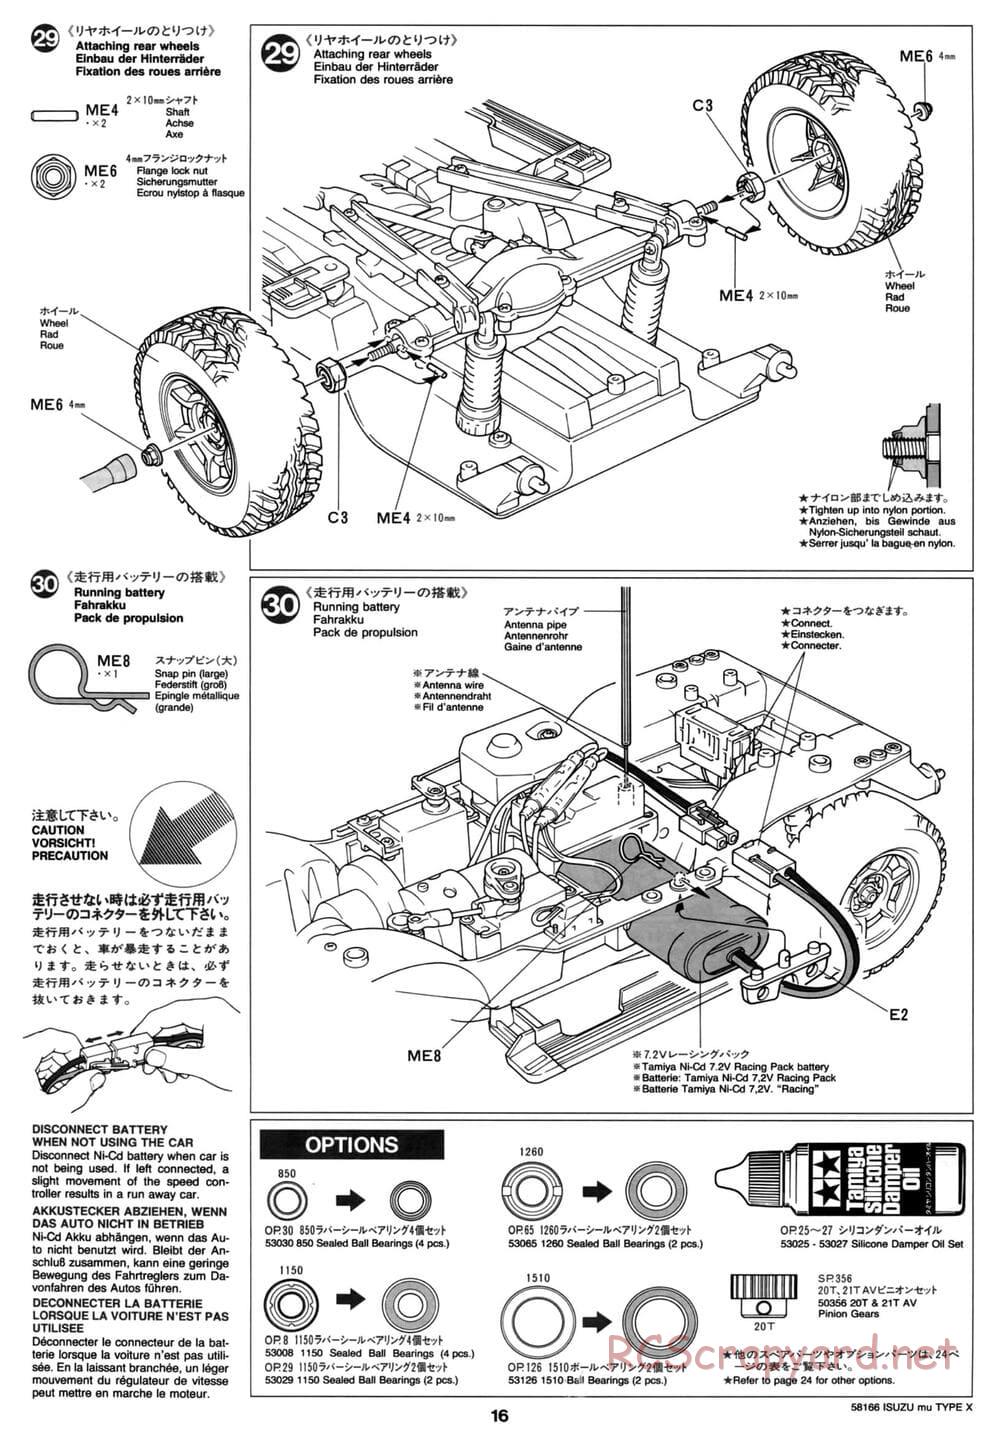 Tamiya - Isuzu Mu Type X - CC-01 Chassis - Manual - Page 16